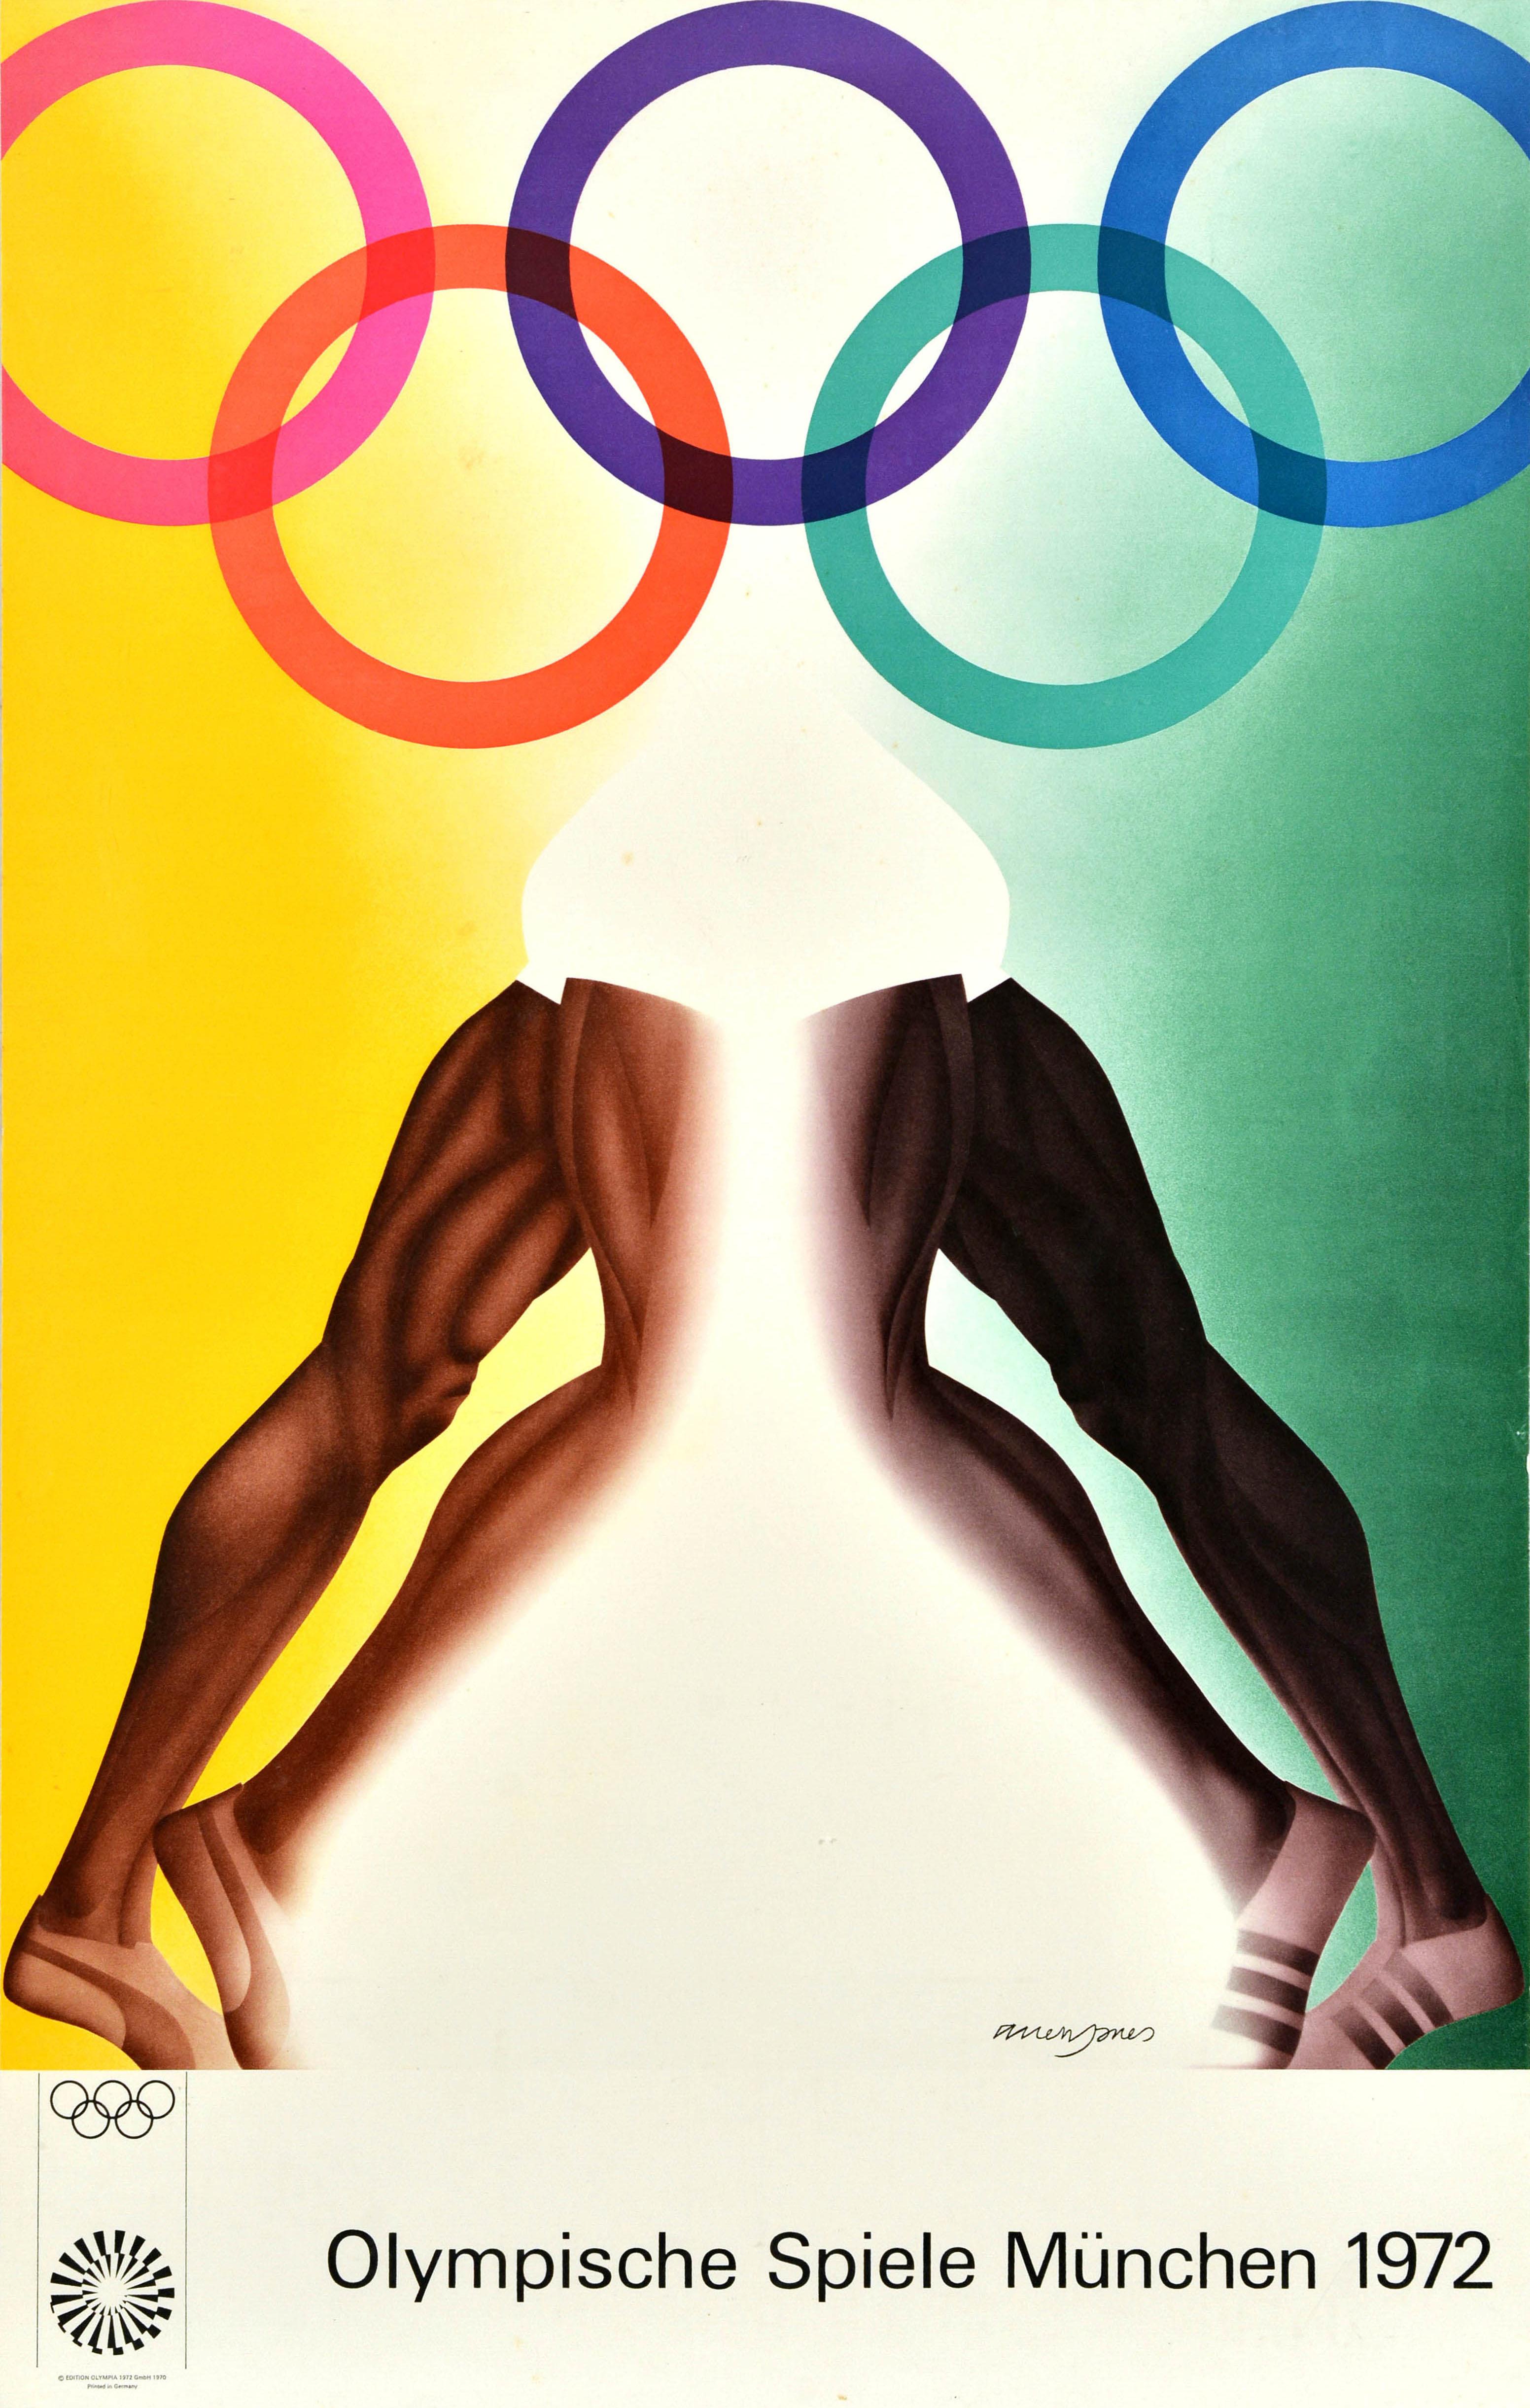 Affiche sportive vintage originale pour les Jeux olympiques d'été de 1972 à Munich, en Allemagne, comportant une illustration colorée de l'artiste pop britannique Allen Jones (né en 1937) représentant le logo avec les cinq anneaux olympiques en